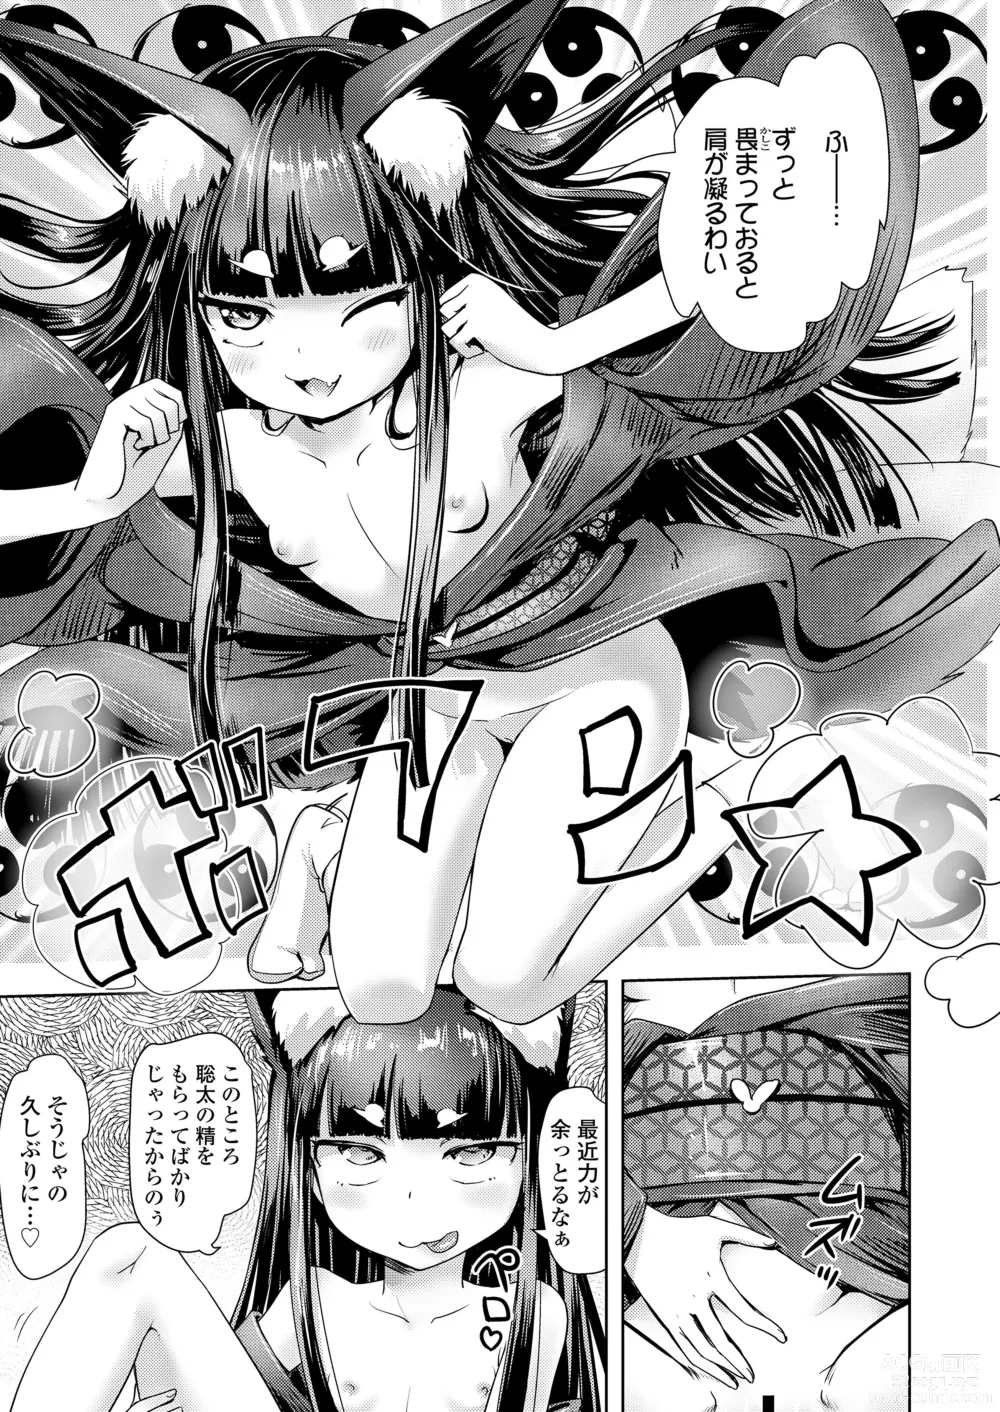 Page 175 of manga Towako Oboro Emaki 14